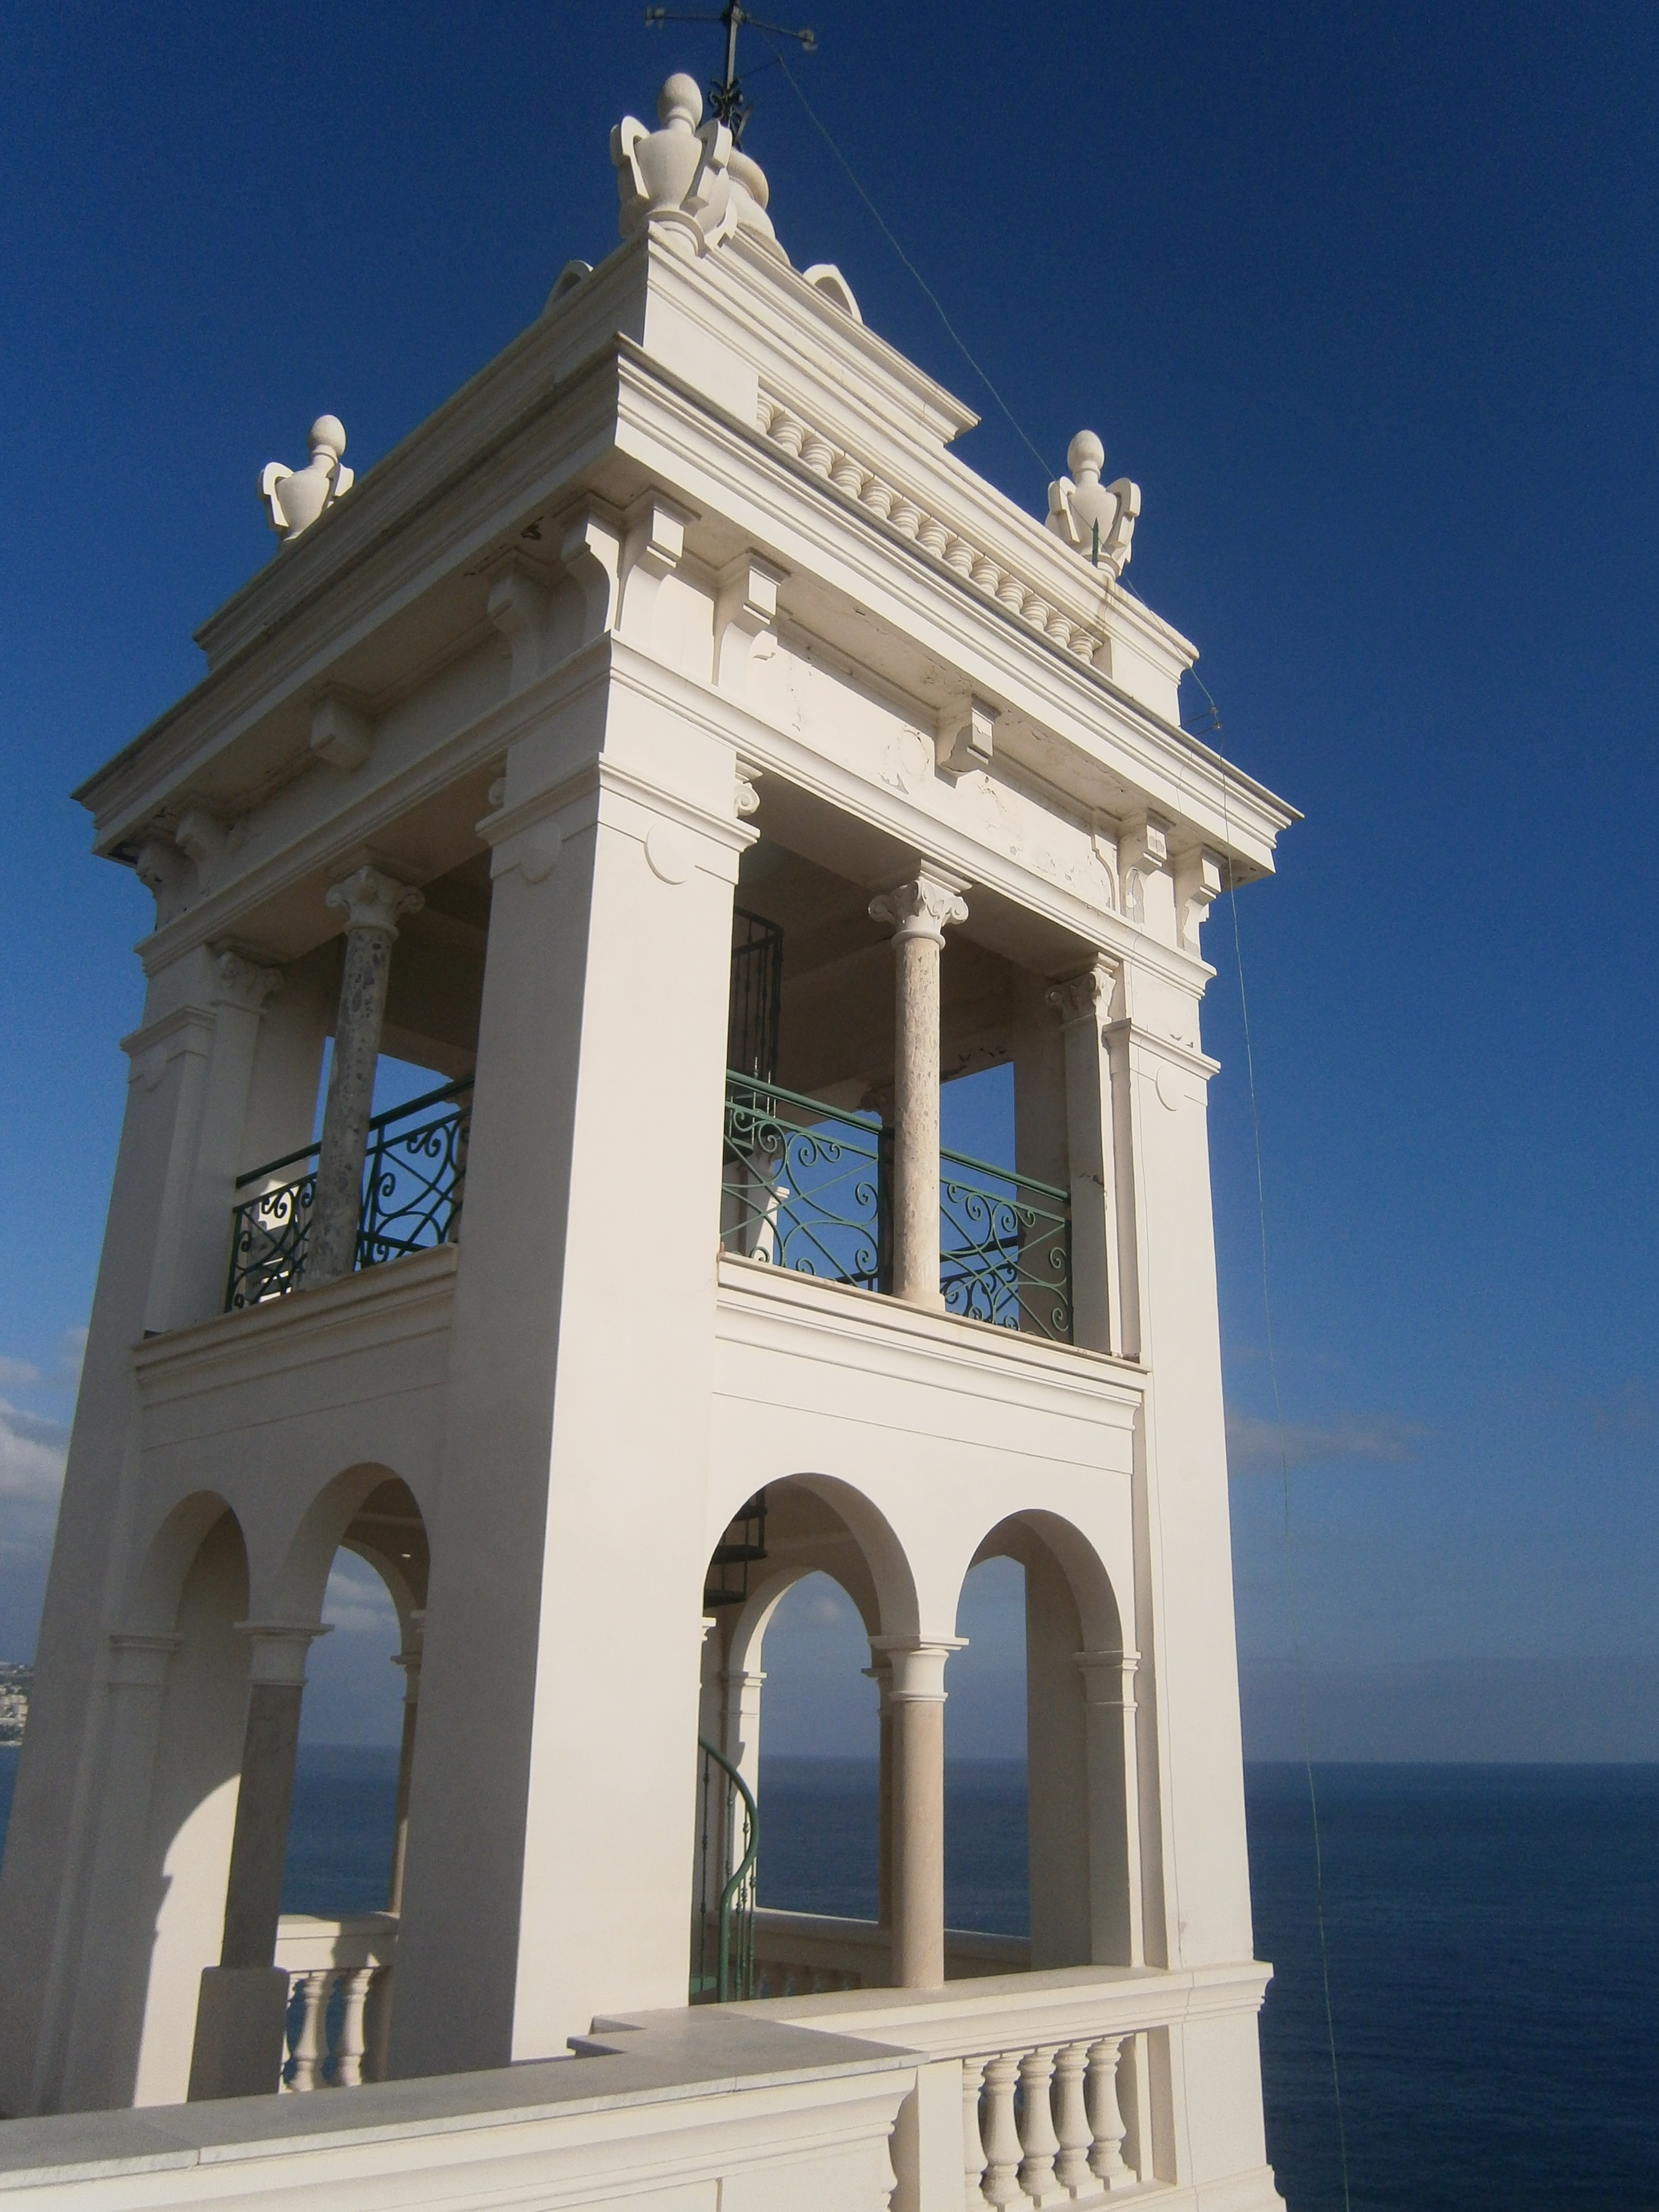 La torretta di Villa Garnier a Bordighera, realizzata dal grande Charles Garnier, progettista dell'Opera di Parigi e di Monte Carlo